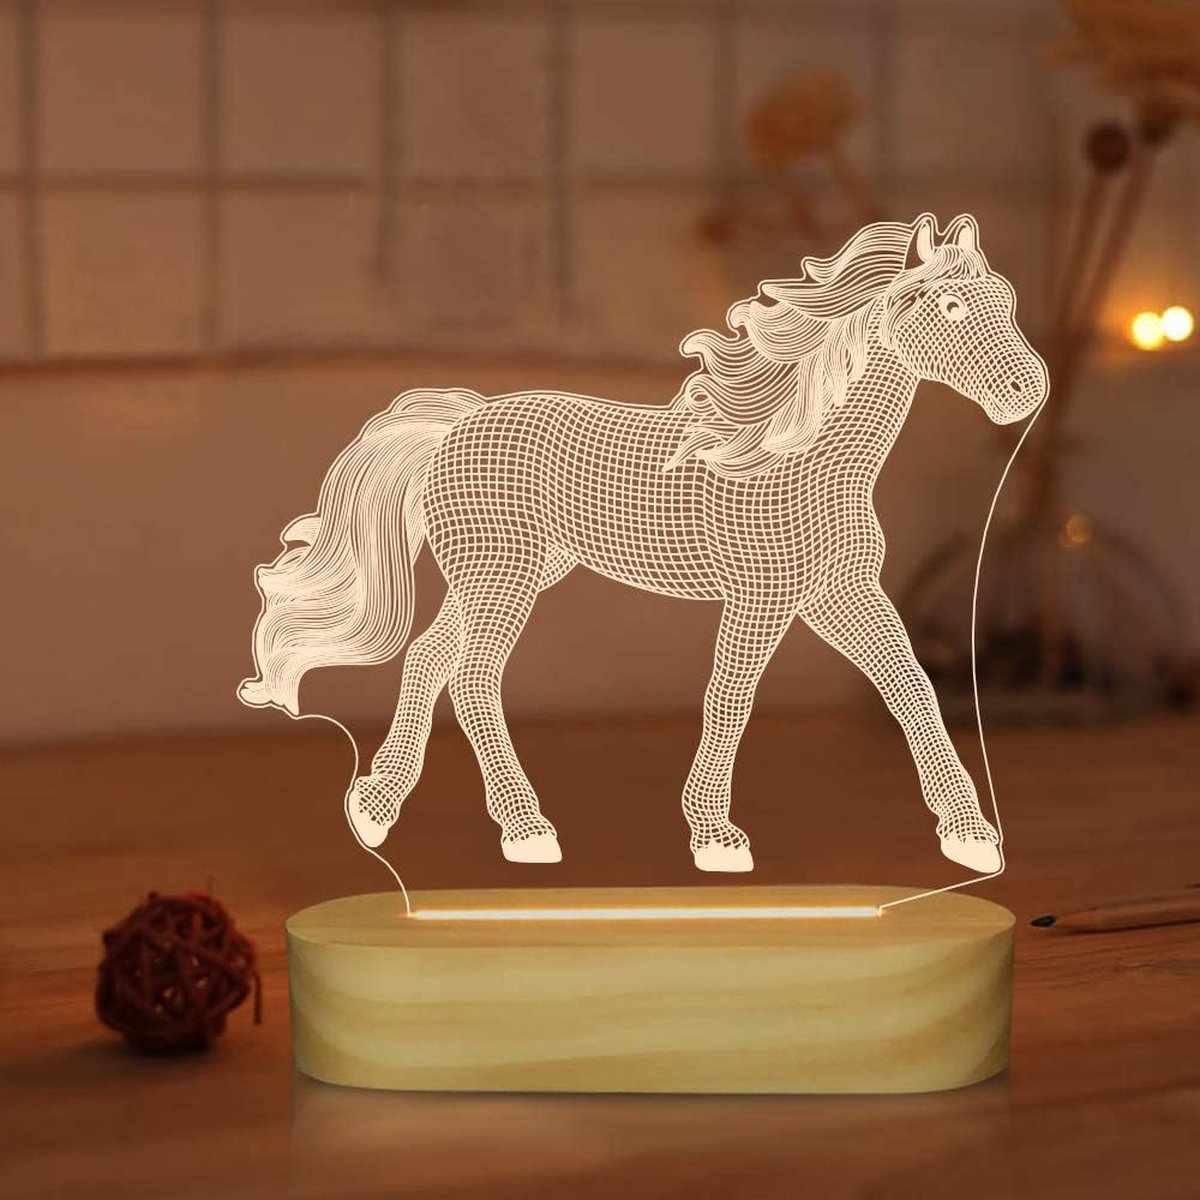 3D Illusie Paard Nachtlampje - LED Warmwit Licht - Slaapkamerdecoratie - Betoverend 3D-effect - Aanraakschakelaar - USB Oplaadbaar